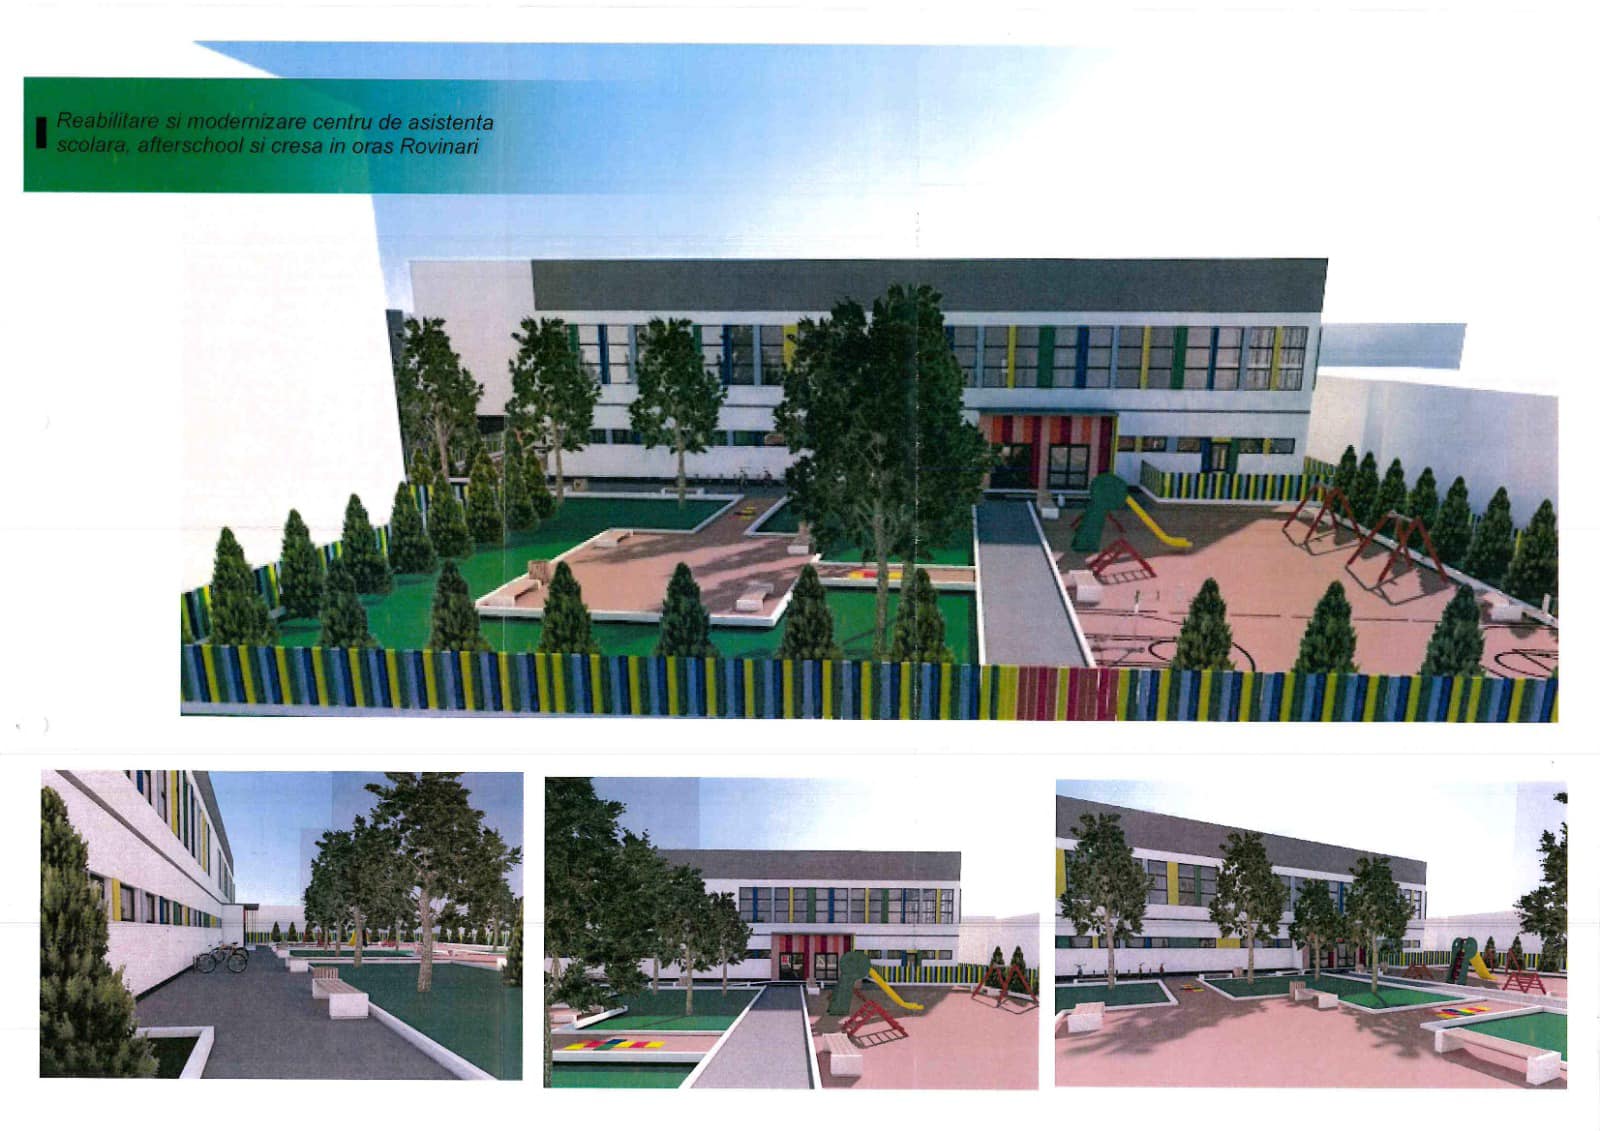 Renovarea energetică a clădirii Centru de asistență școlară after school și creșă în orașul Rovinari